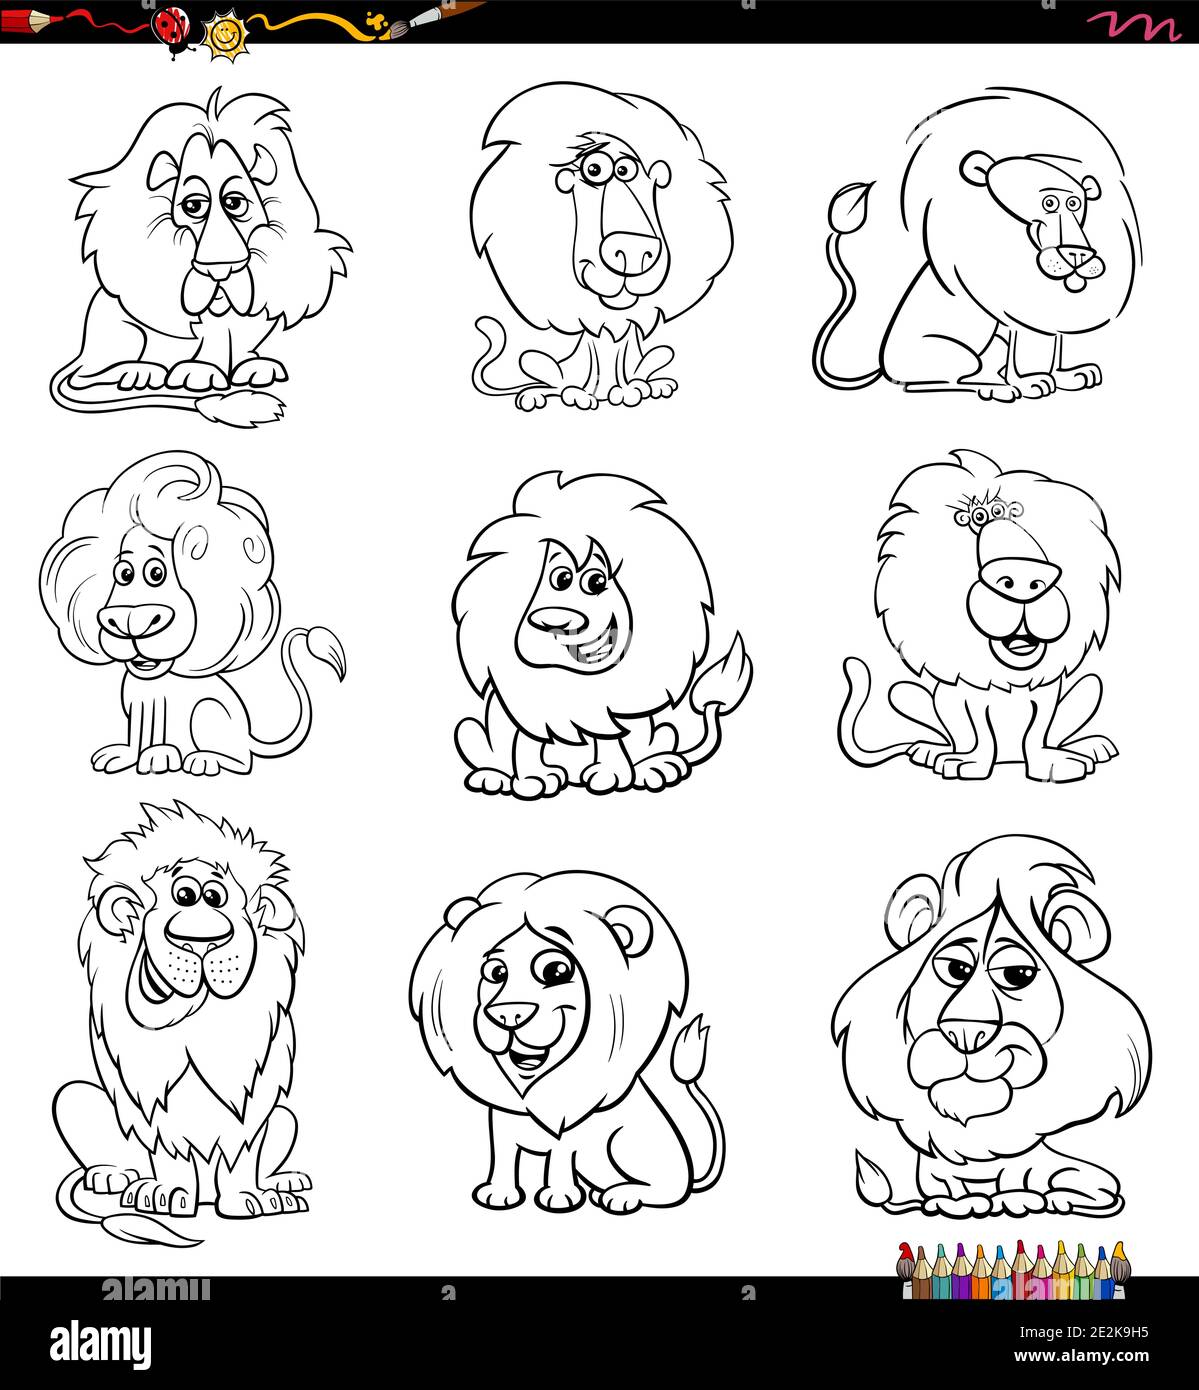 Dibujo de dibujos animados en blanco y negro de personajes de animales de cómic de leones establecer página de libro de colores Ilustración del Vector